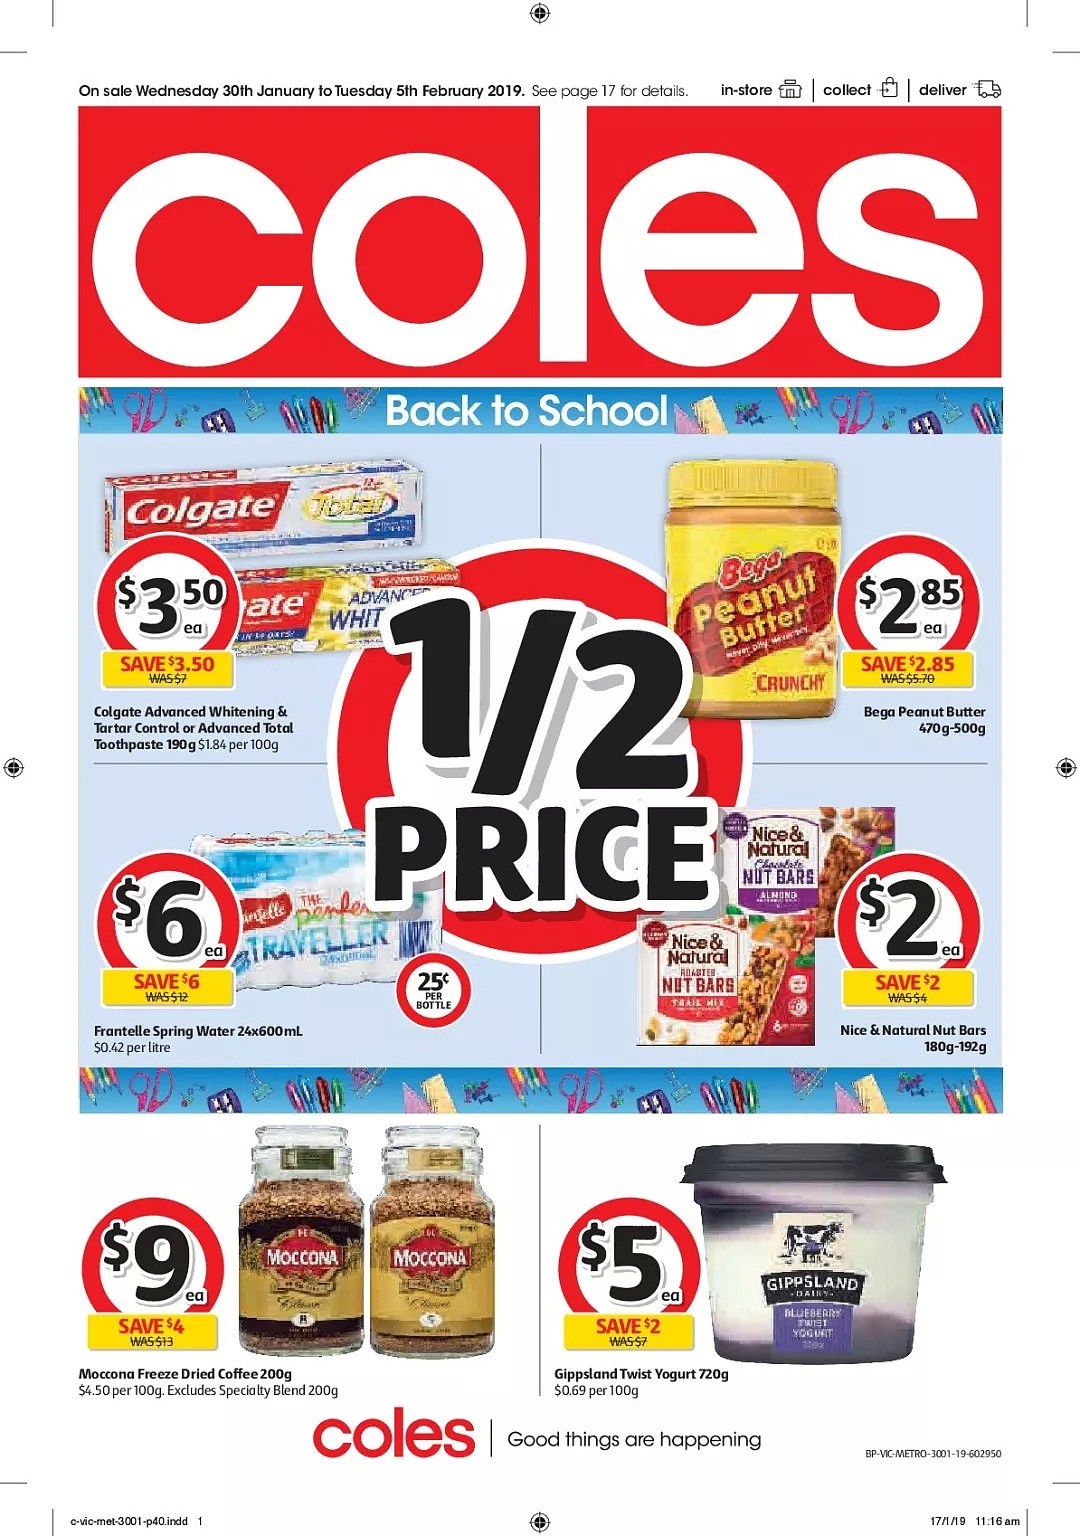 Coles 1月30日-2月5日折扣，网红Messina联名冰淇淋半价 - 37